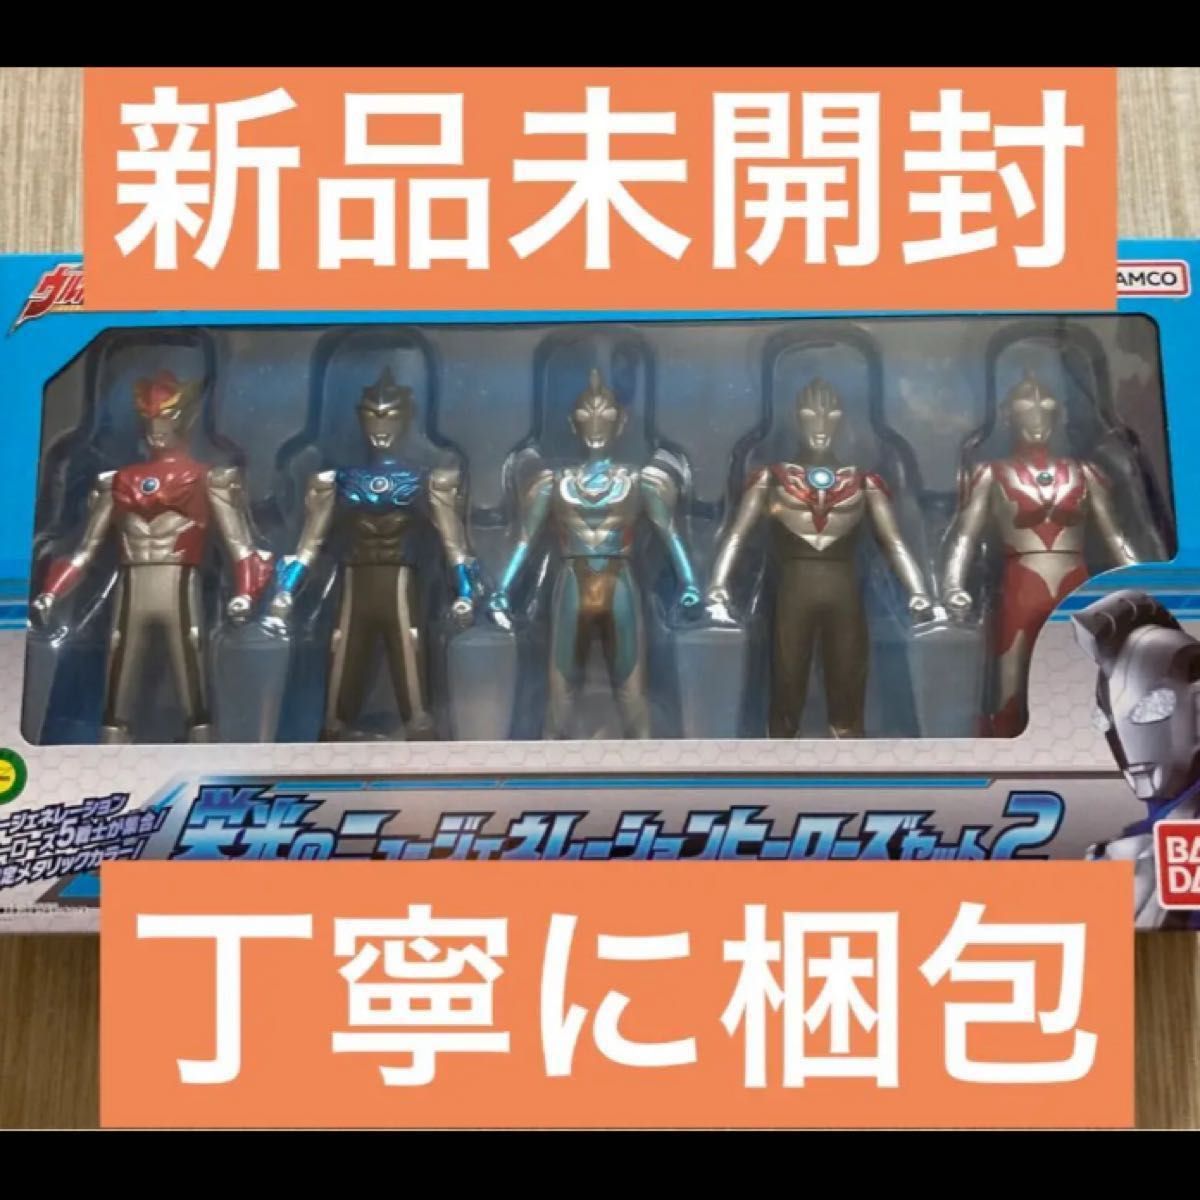 ウルトラヒーローシリーズEX 栄光のニュージェネレーションヒーローズ セット2